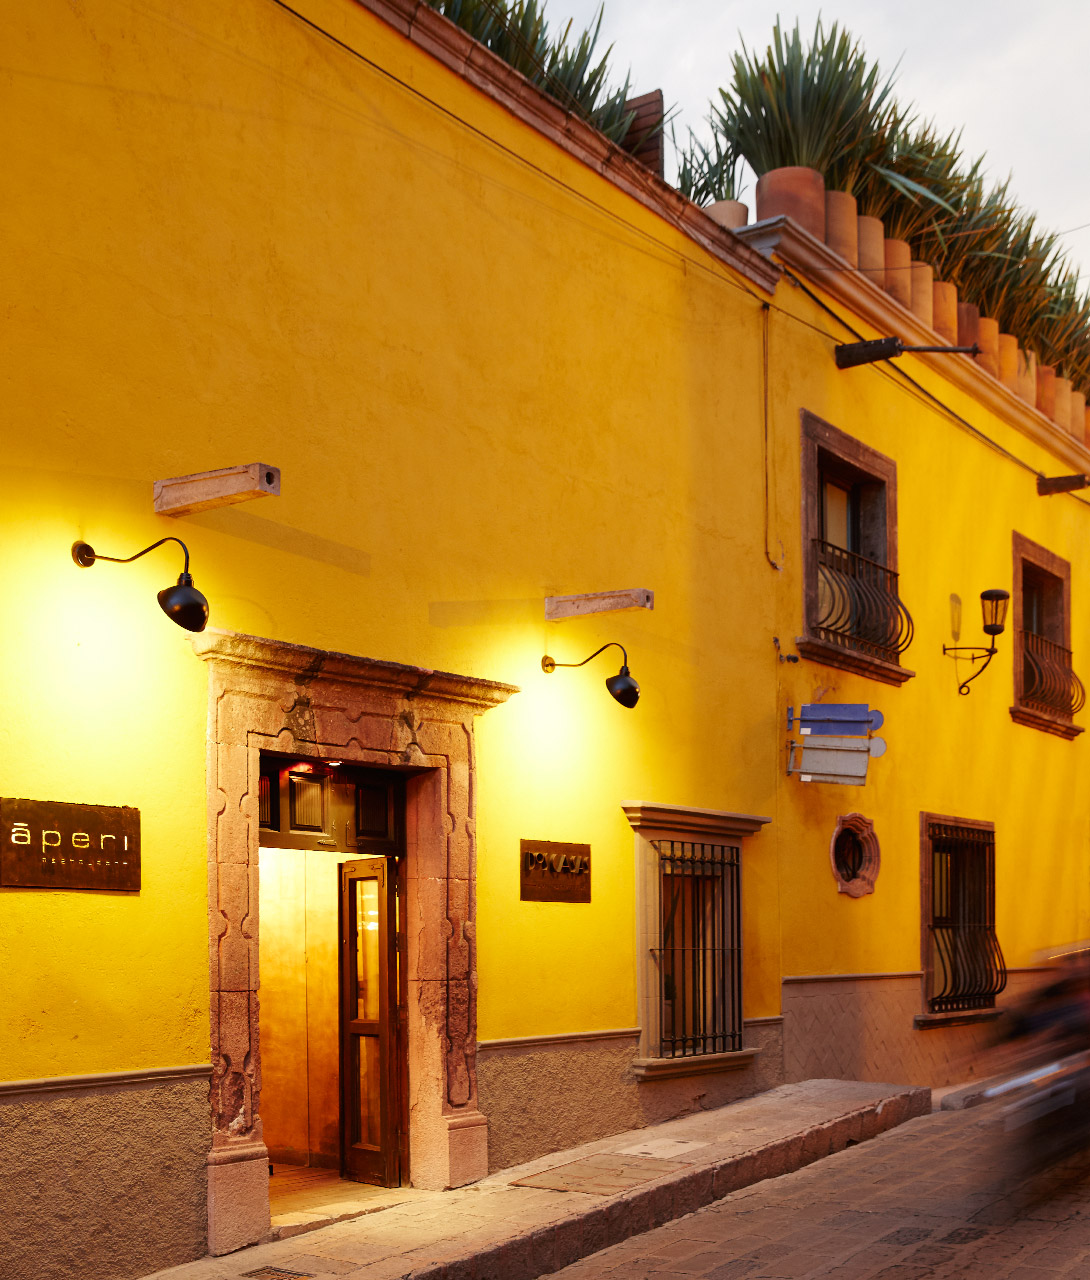 Dos Casas Hotel and Spa Facade in San Miguel de Allende